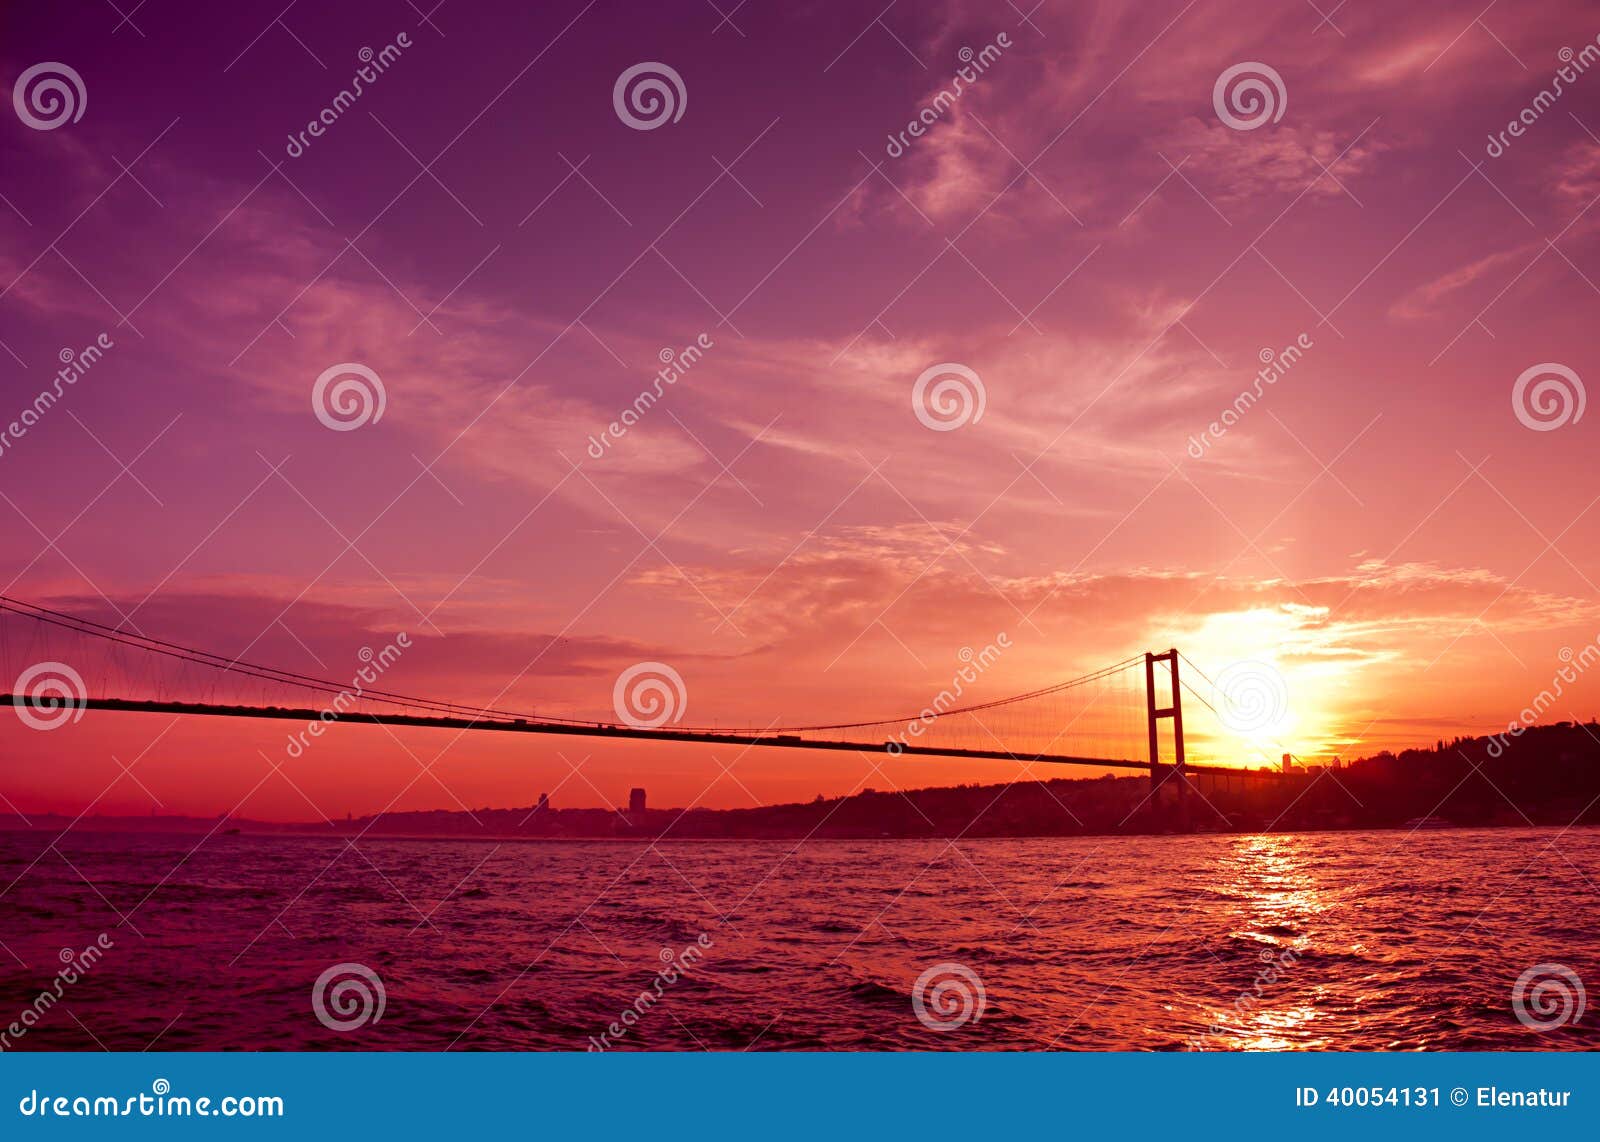 bosphorus bridge in istanbul, turkey.